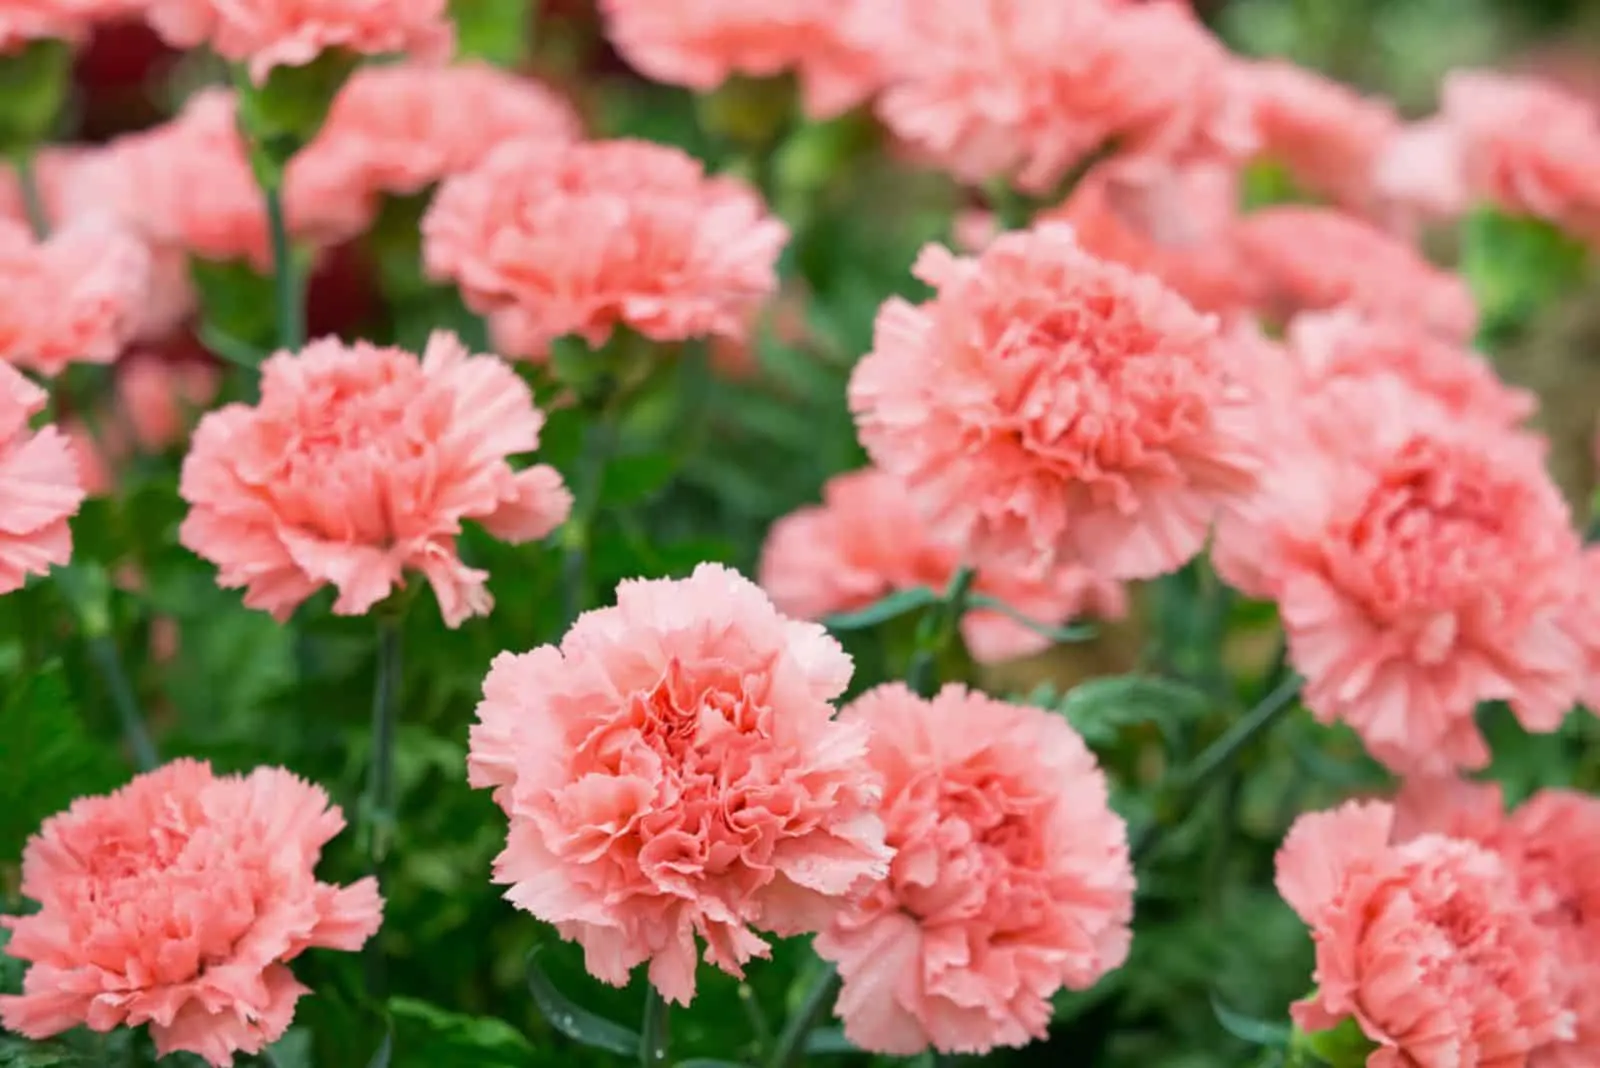 Pink carnation in a garden